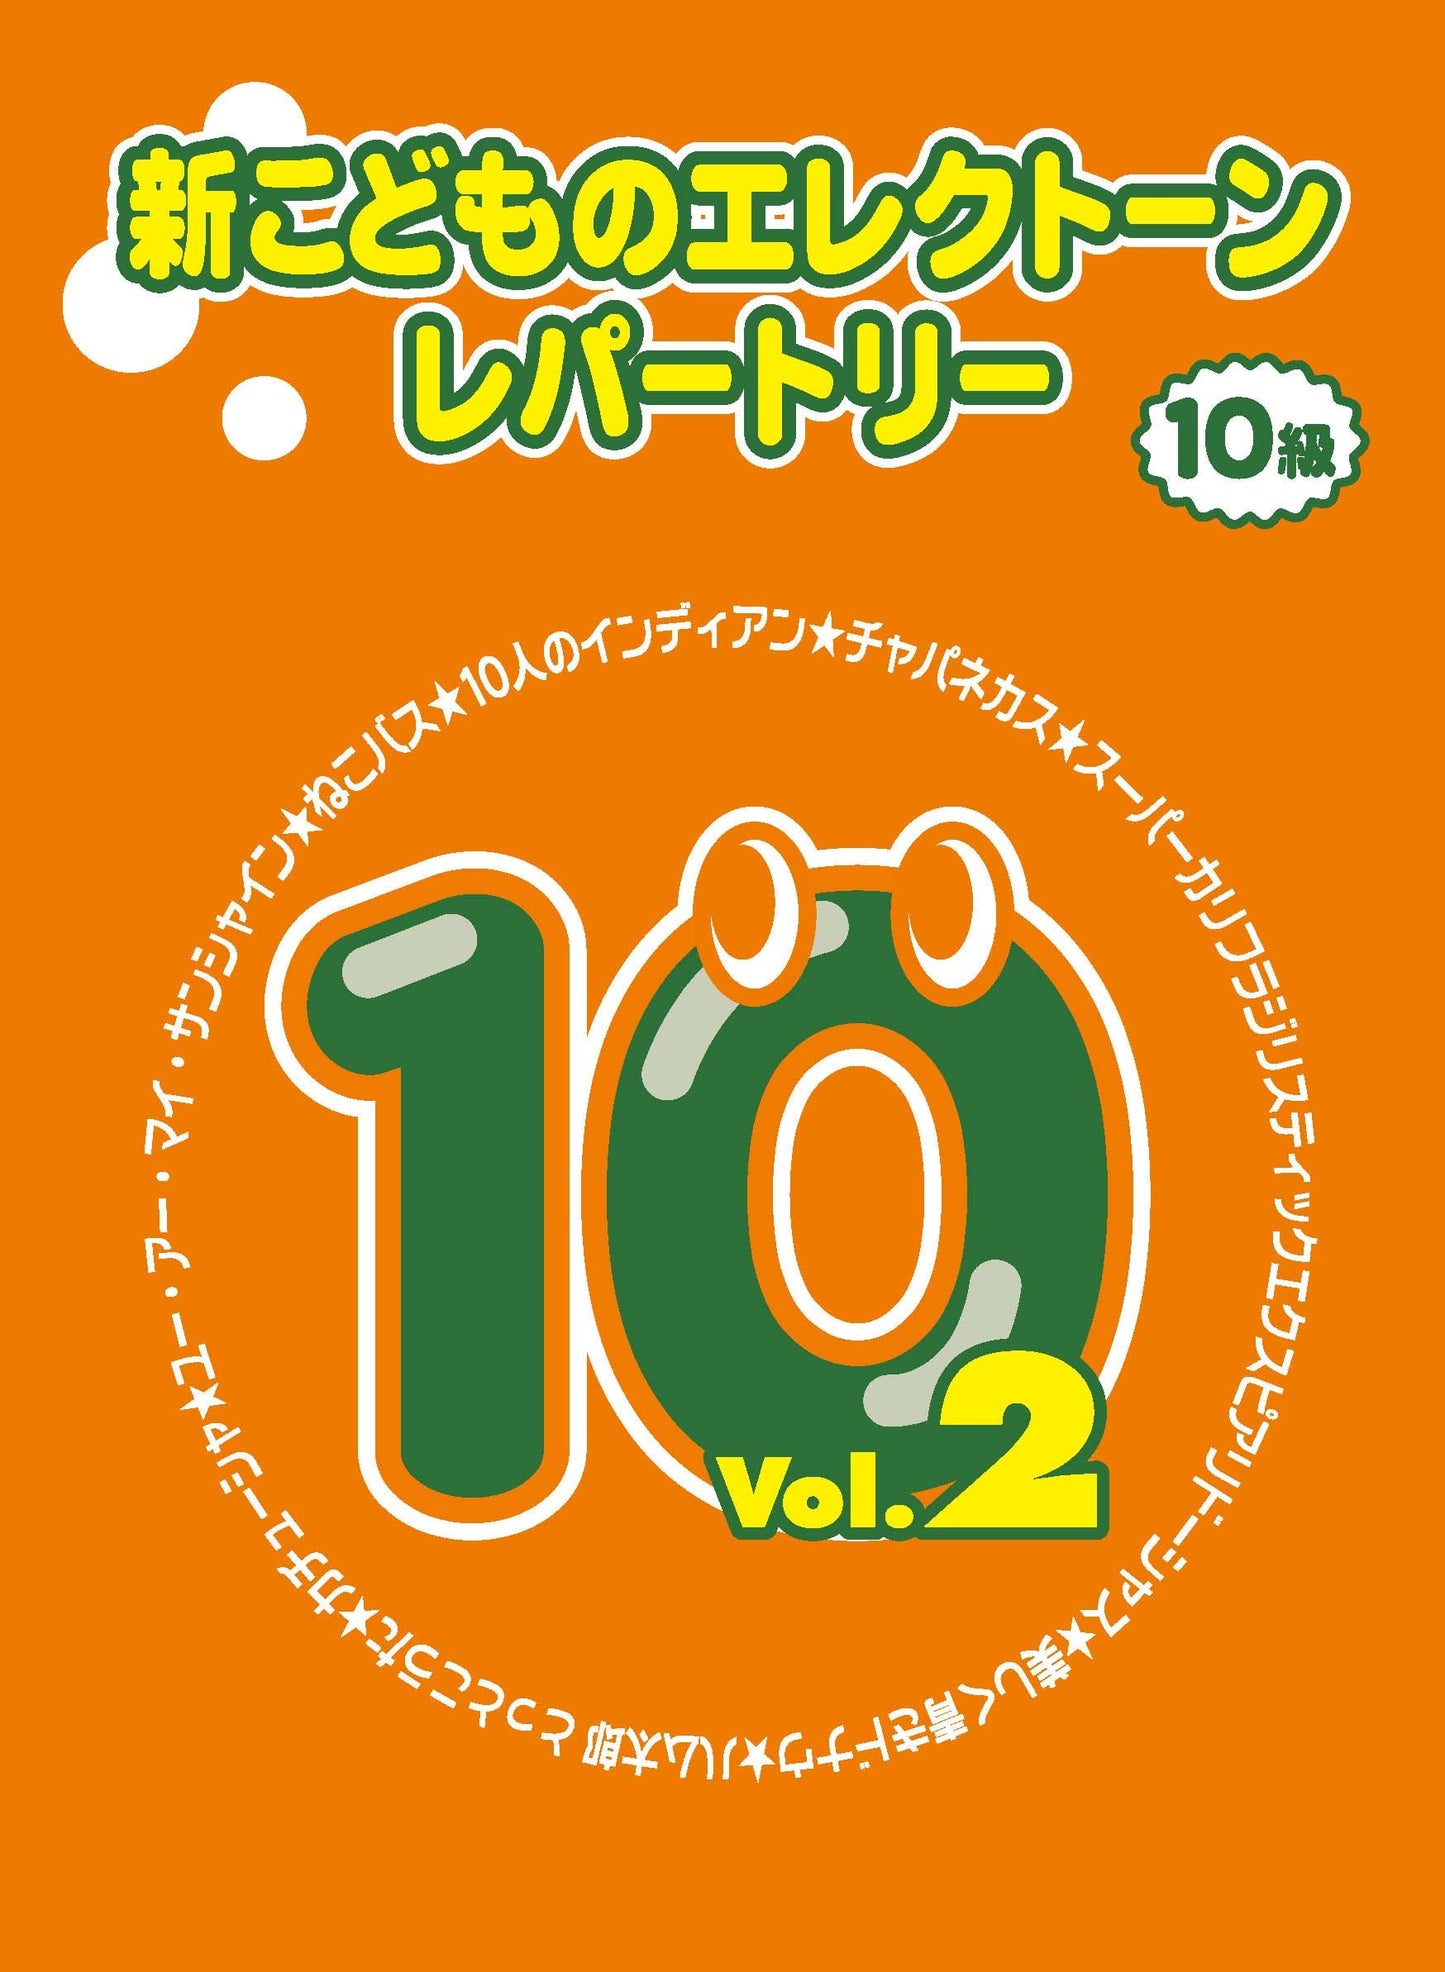 新こどものエレクトーン・レパートリー グレード10級Vol.2